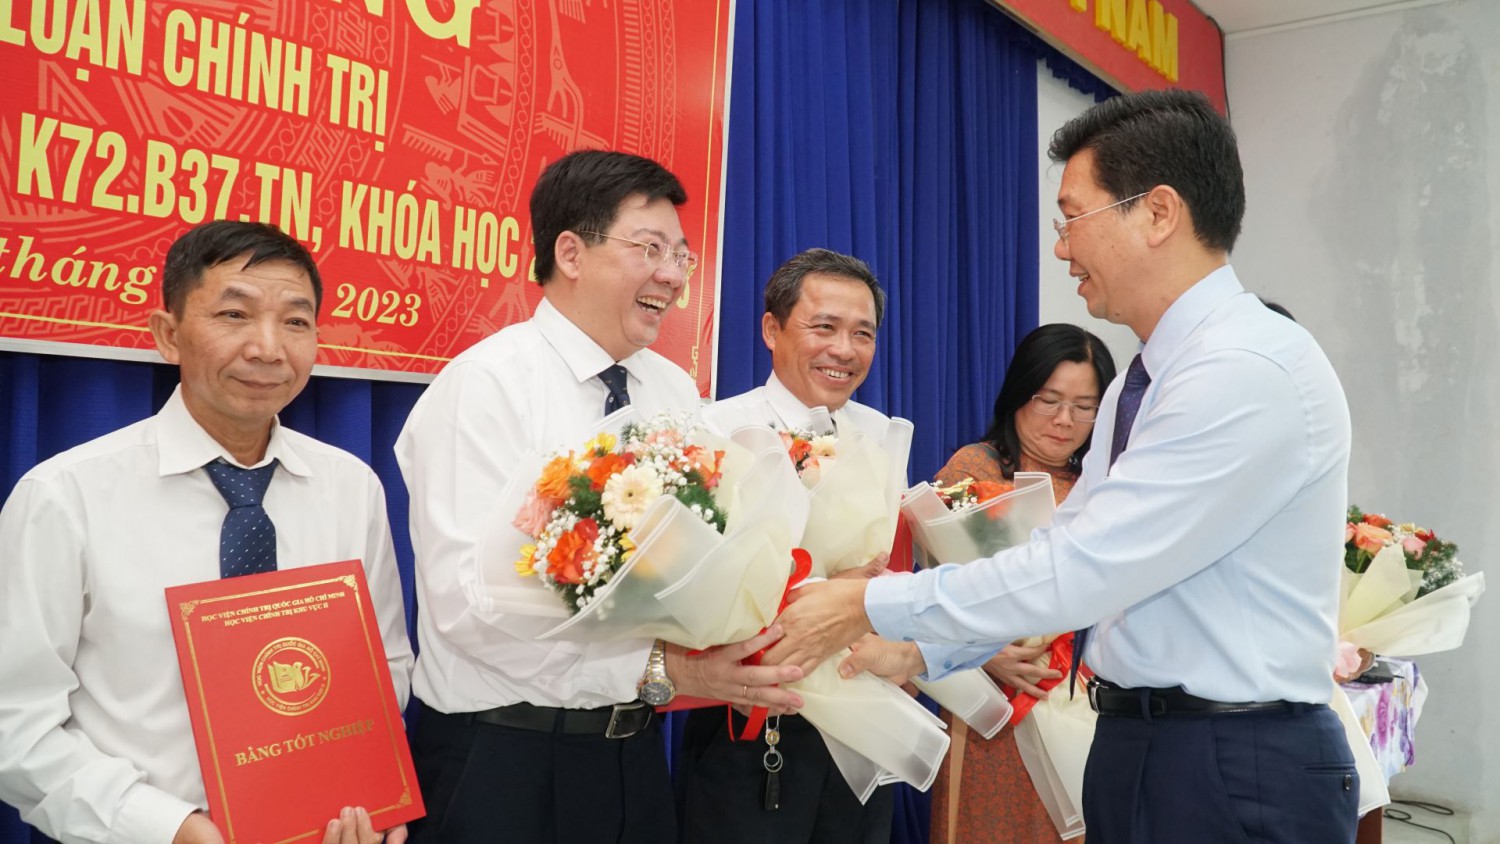 Bế giảng lớp Cao cấp Lý luận chính trị K72.B37.TN hệ không tập trung tại Trường Chính trị tỉnh Tây Ninh